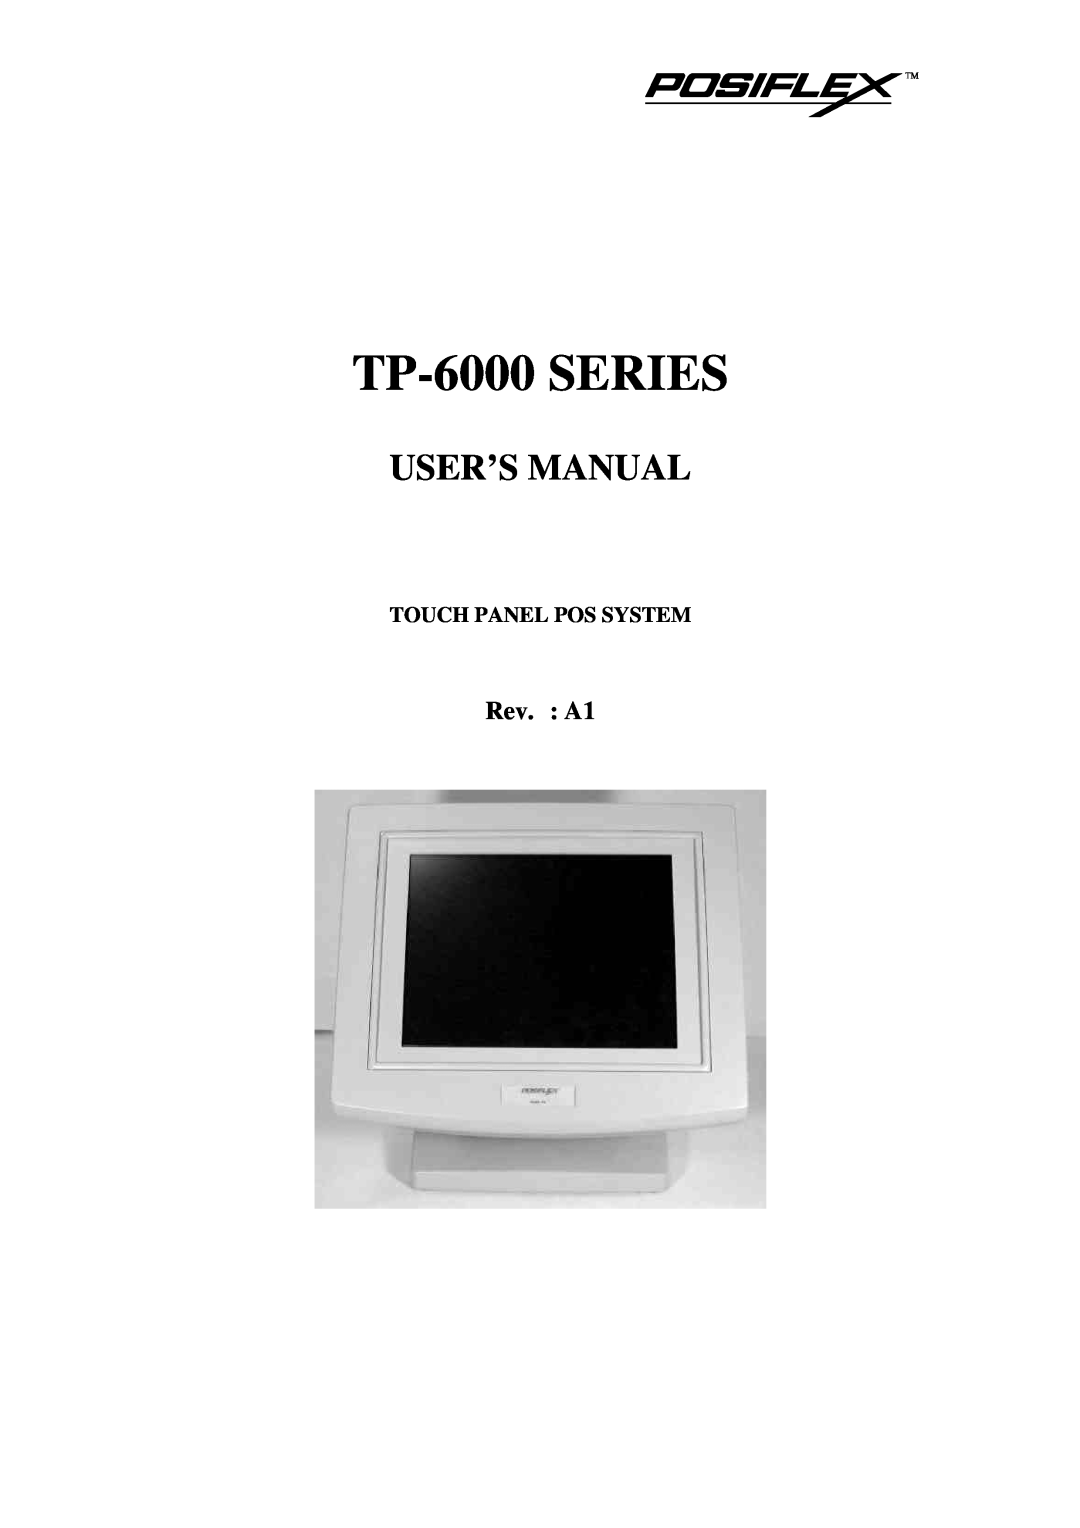 Mustek user manual TP-6000 SERIES, User’S Manual, Rev. A1 